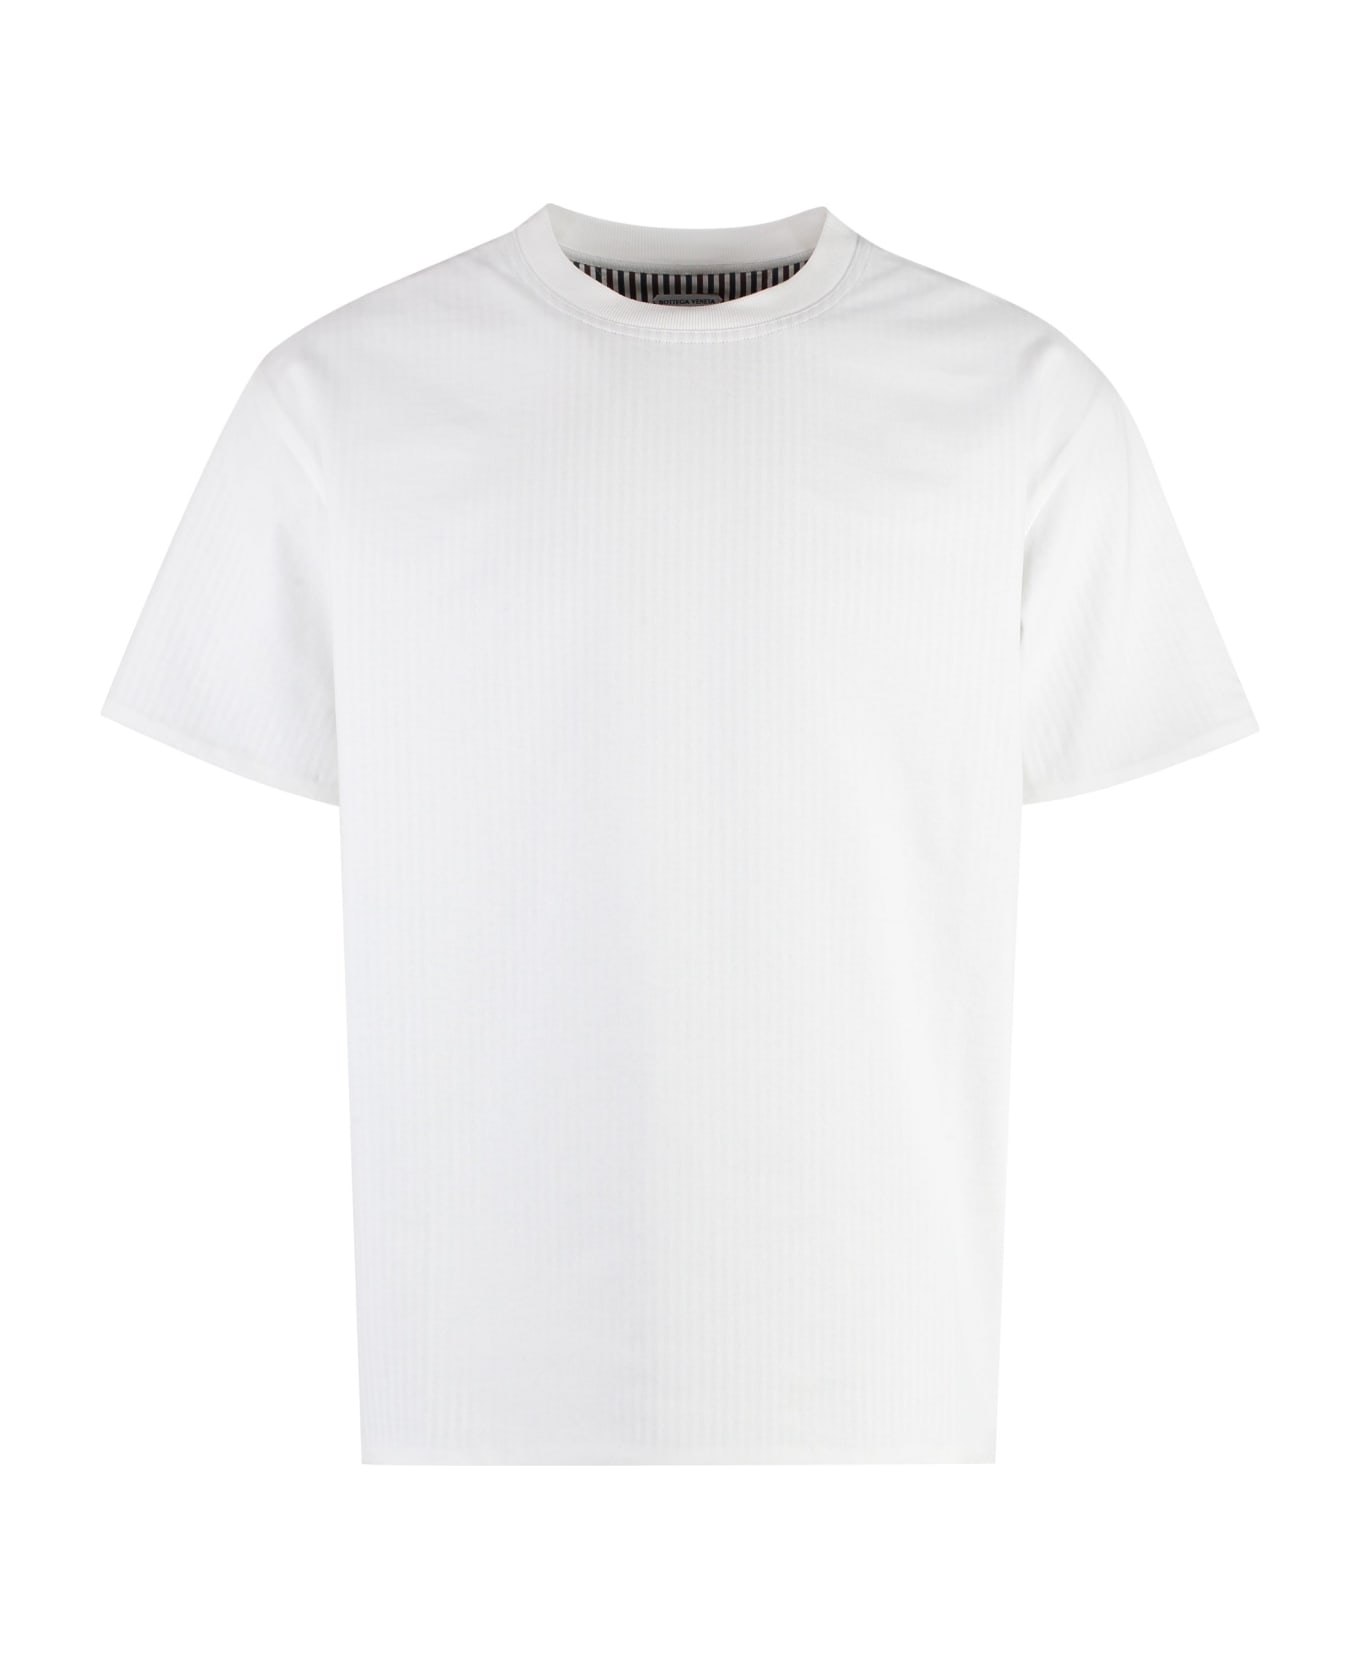 Bottega Veneta Cotton Crew-neck T-shirt - White シャツ